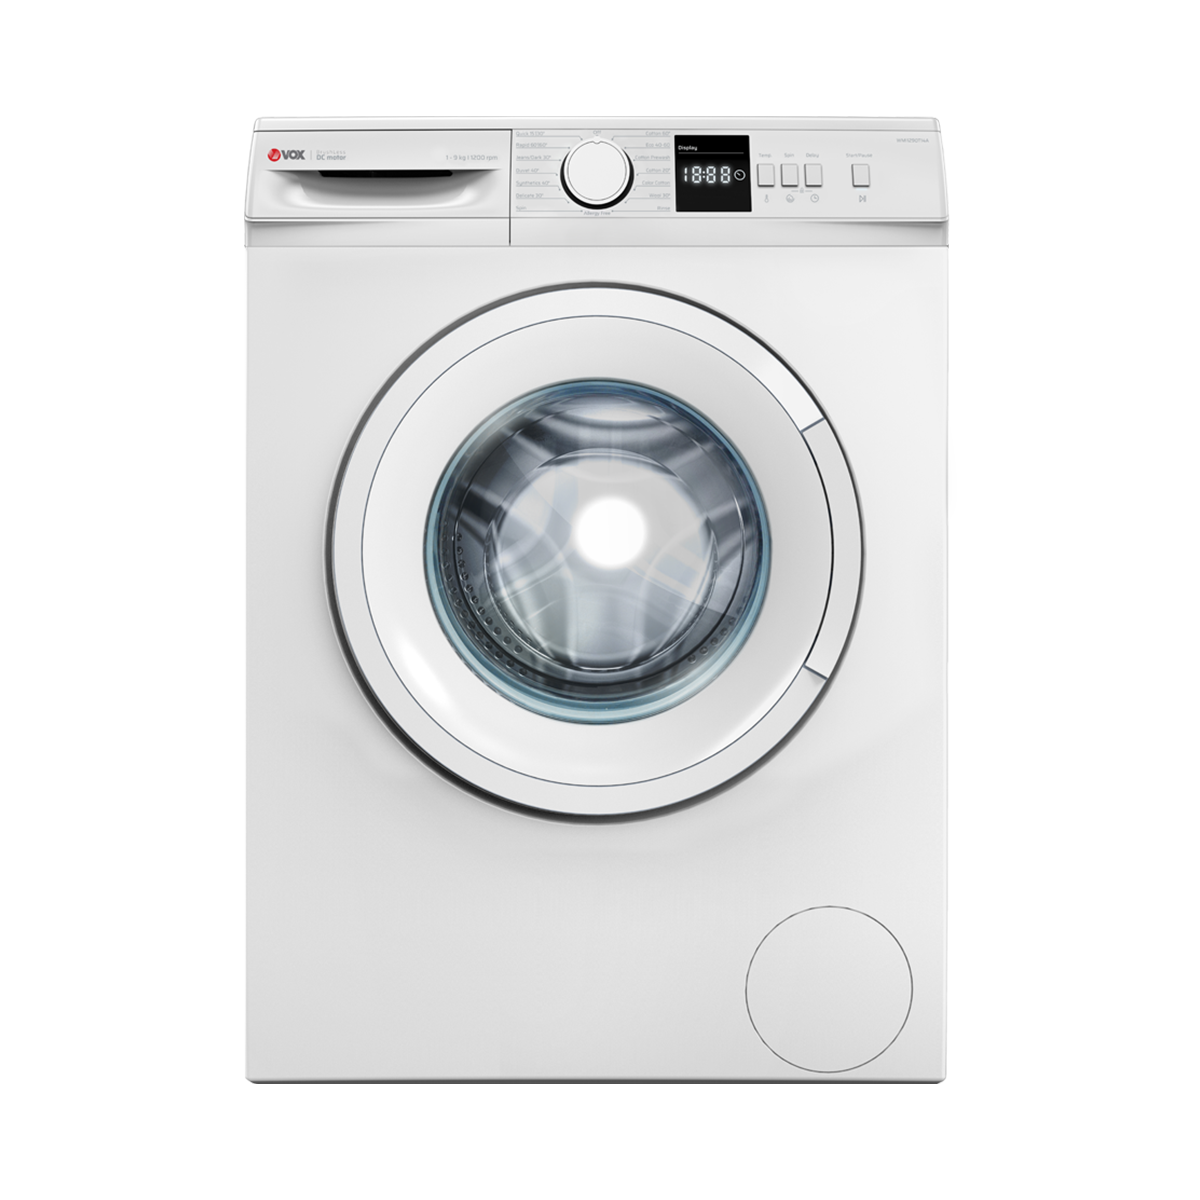 Washing machine WMI1290-T14A 